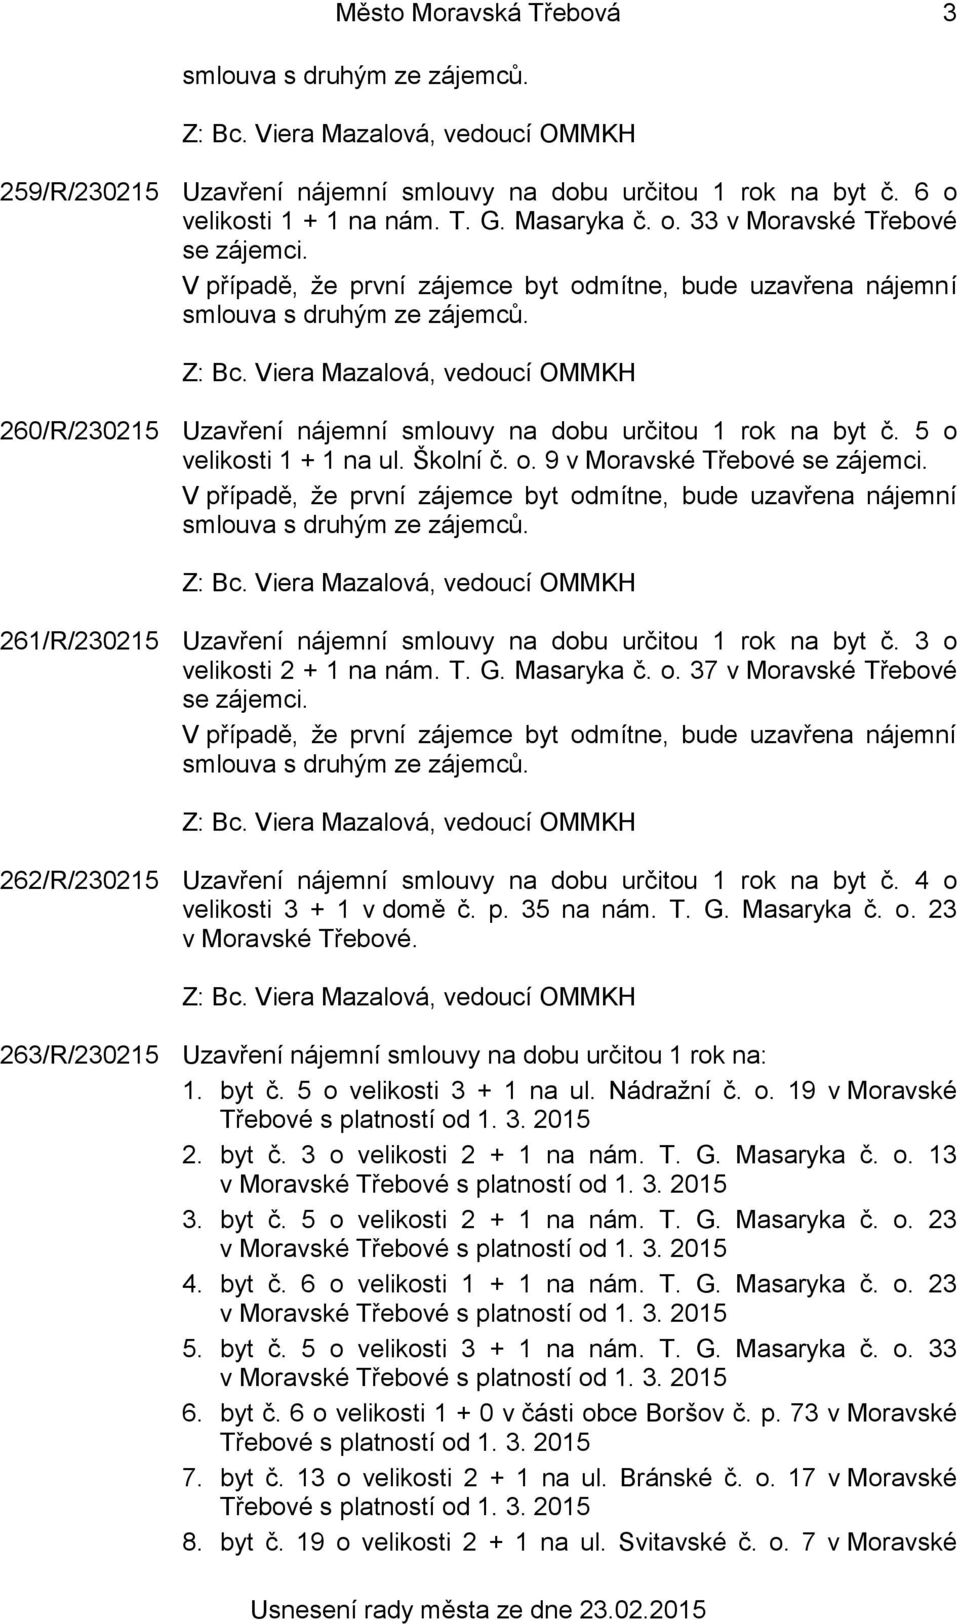 261/R/230215 Uzavření nájemní smlouvy na dobu určitou 1 rok na byt č. 3 o velikosti 2 + 1 na nám. T. G. Masaryka č. o. 37 v Moravské Třebové se zájemci.